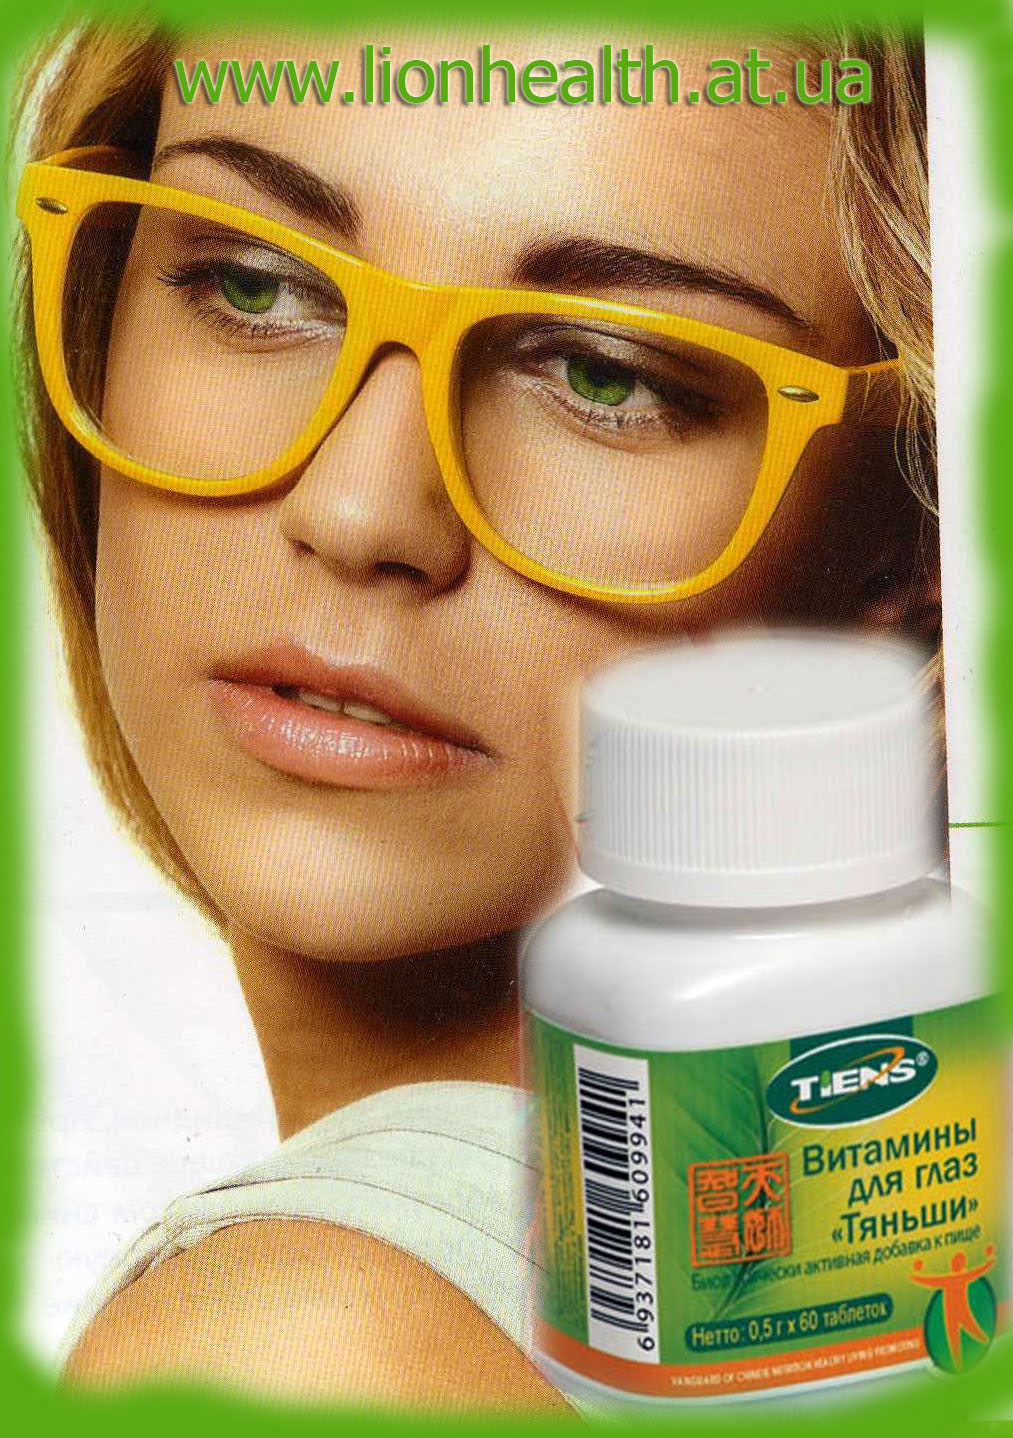 витамины для глаз тяньши,таблетки для улучшения зрения тяньши,тяньши в украине, черника для глаз,тяньши